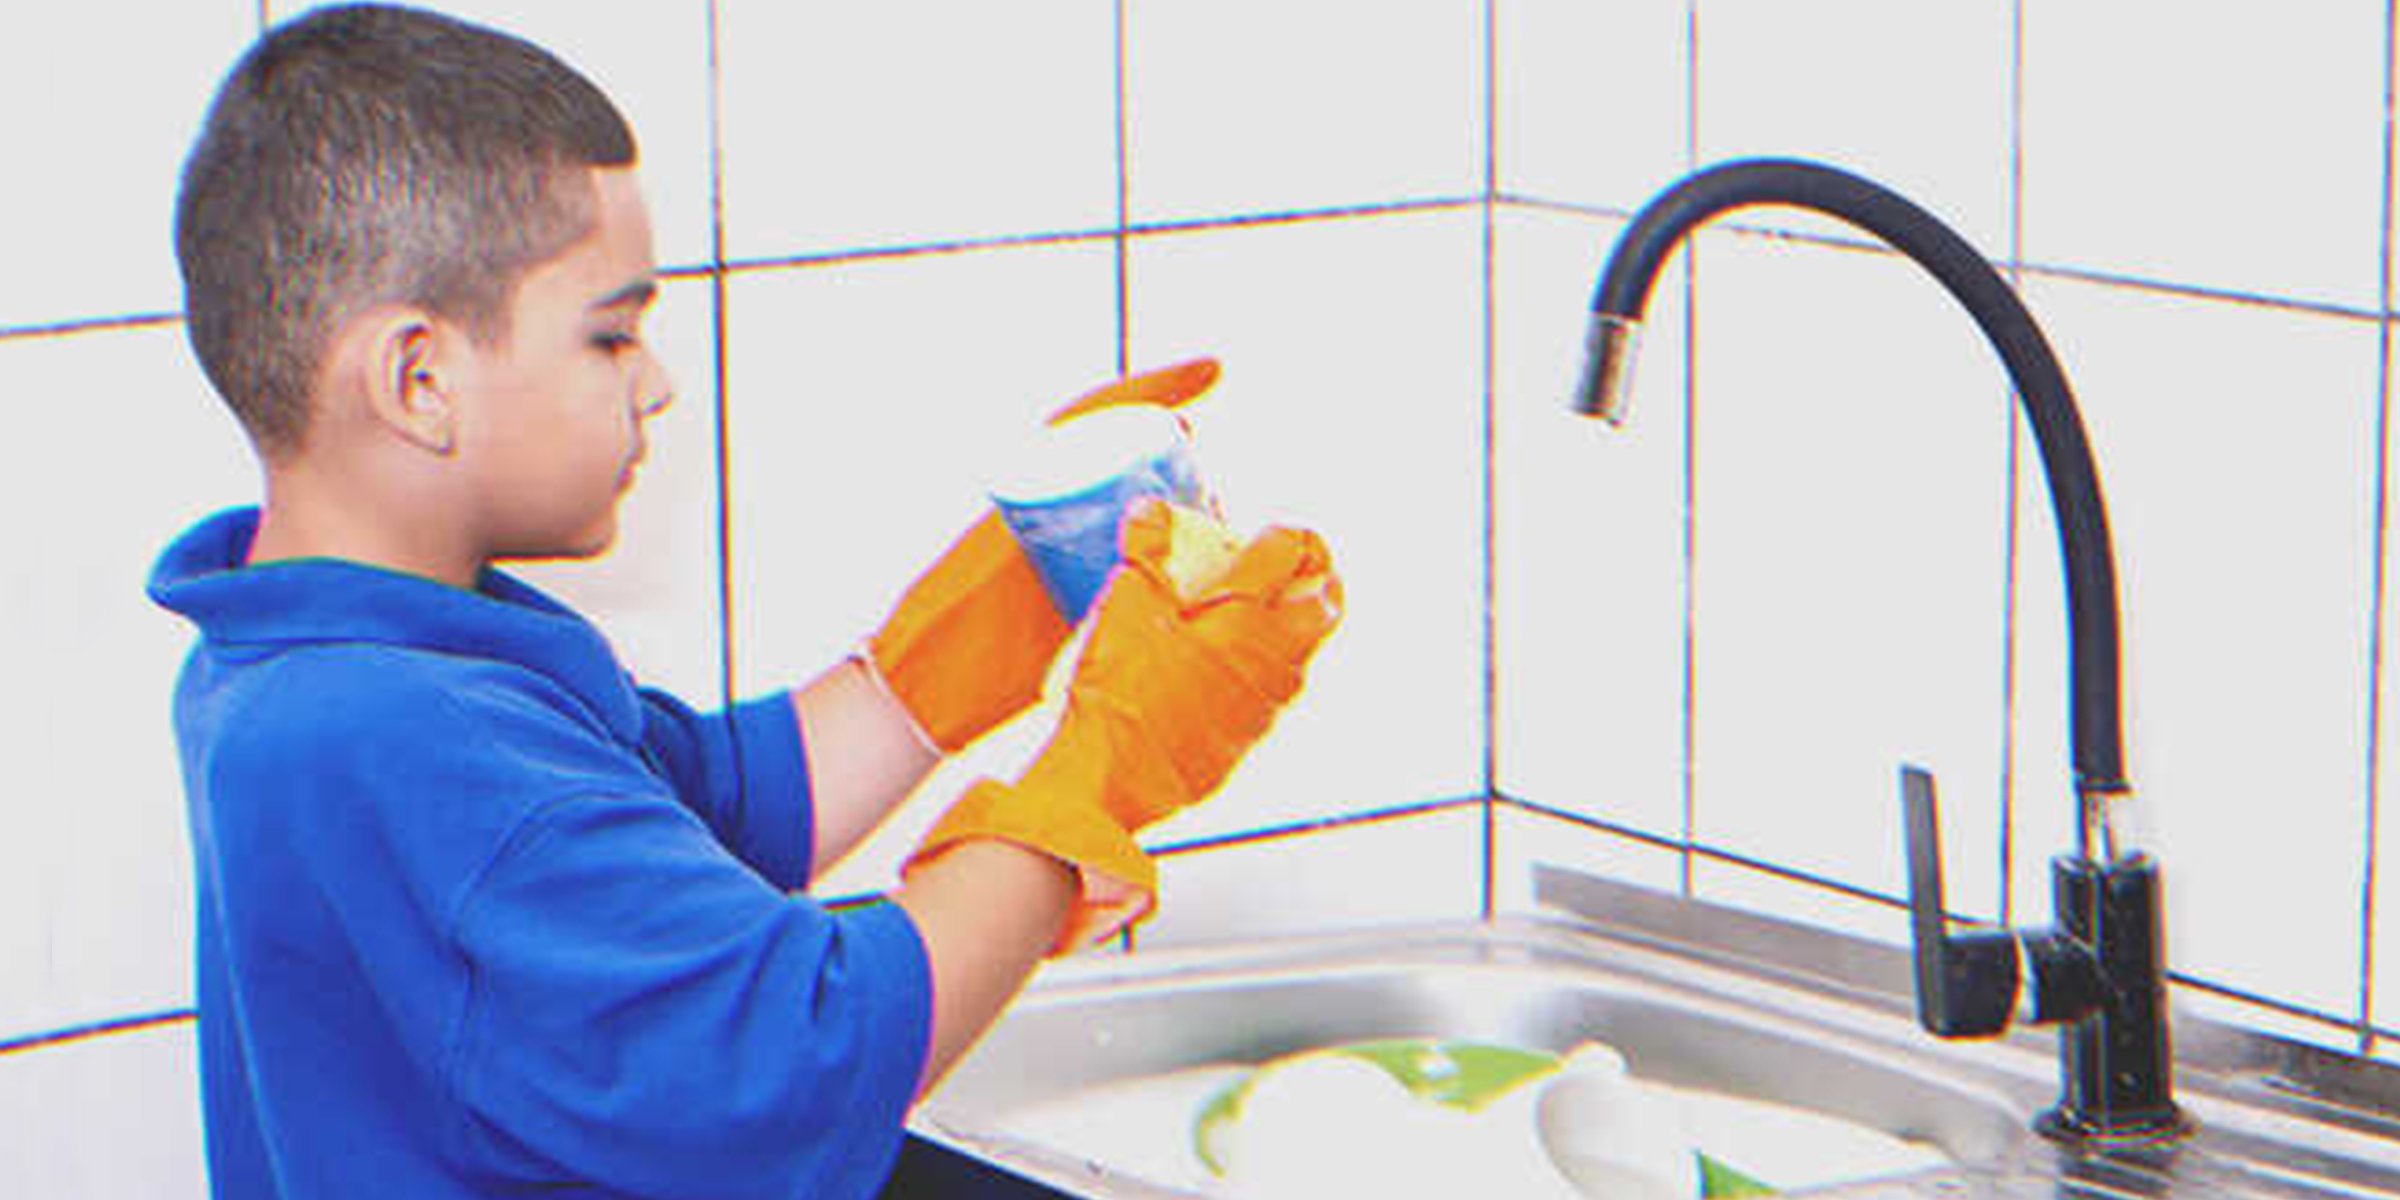 Niño lavando platos. | Foto: Flickr/Marco Verc (CC BY 2.0)